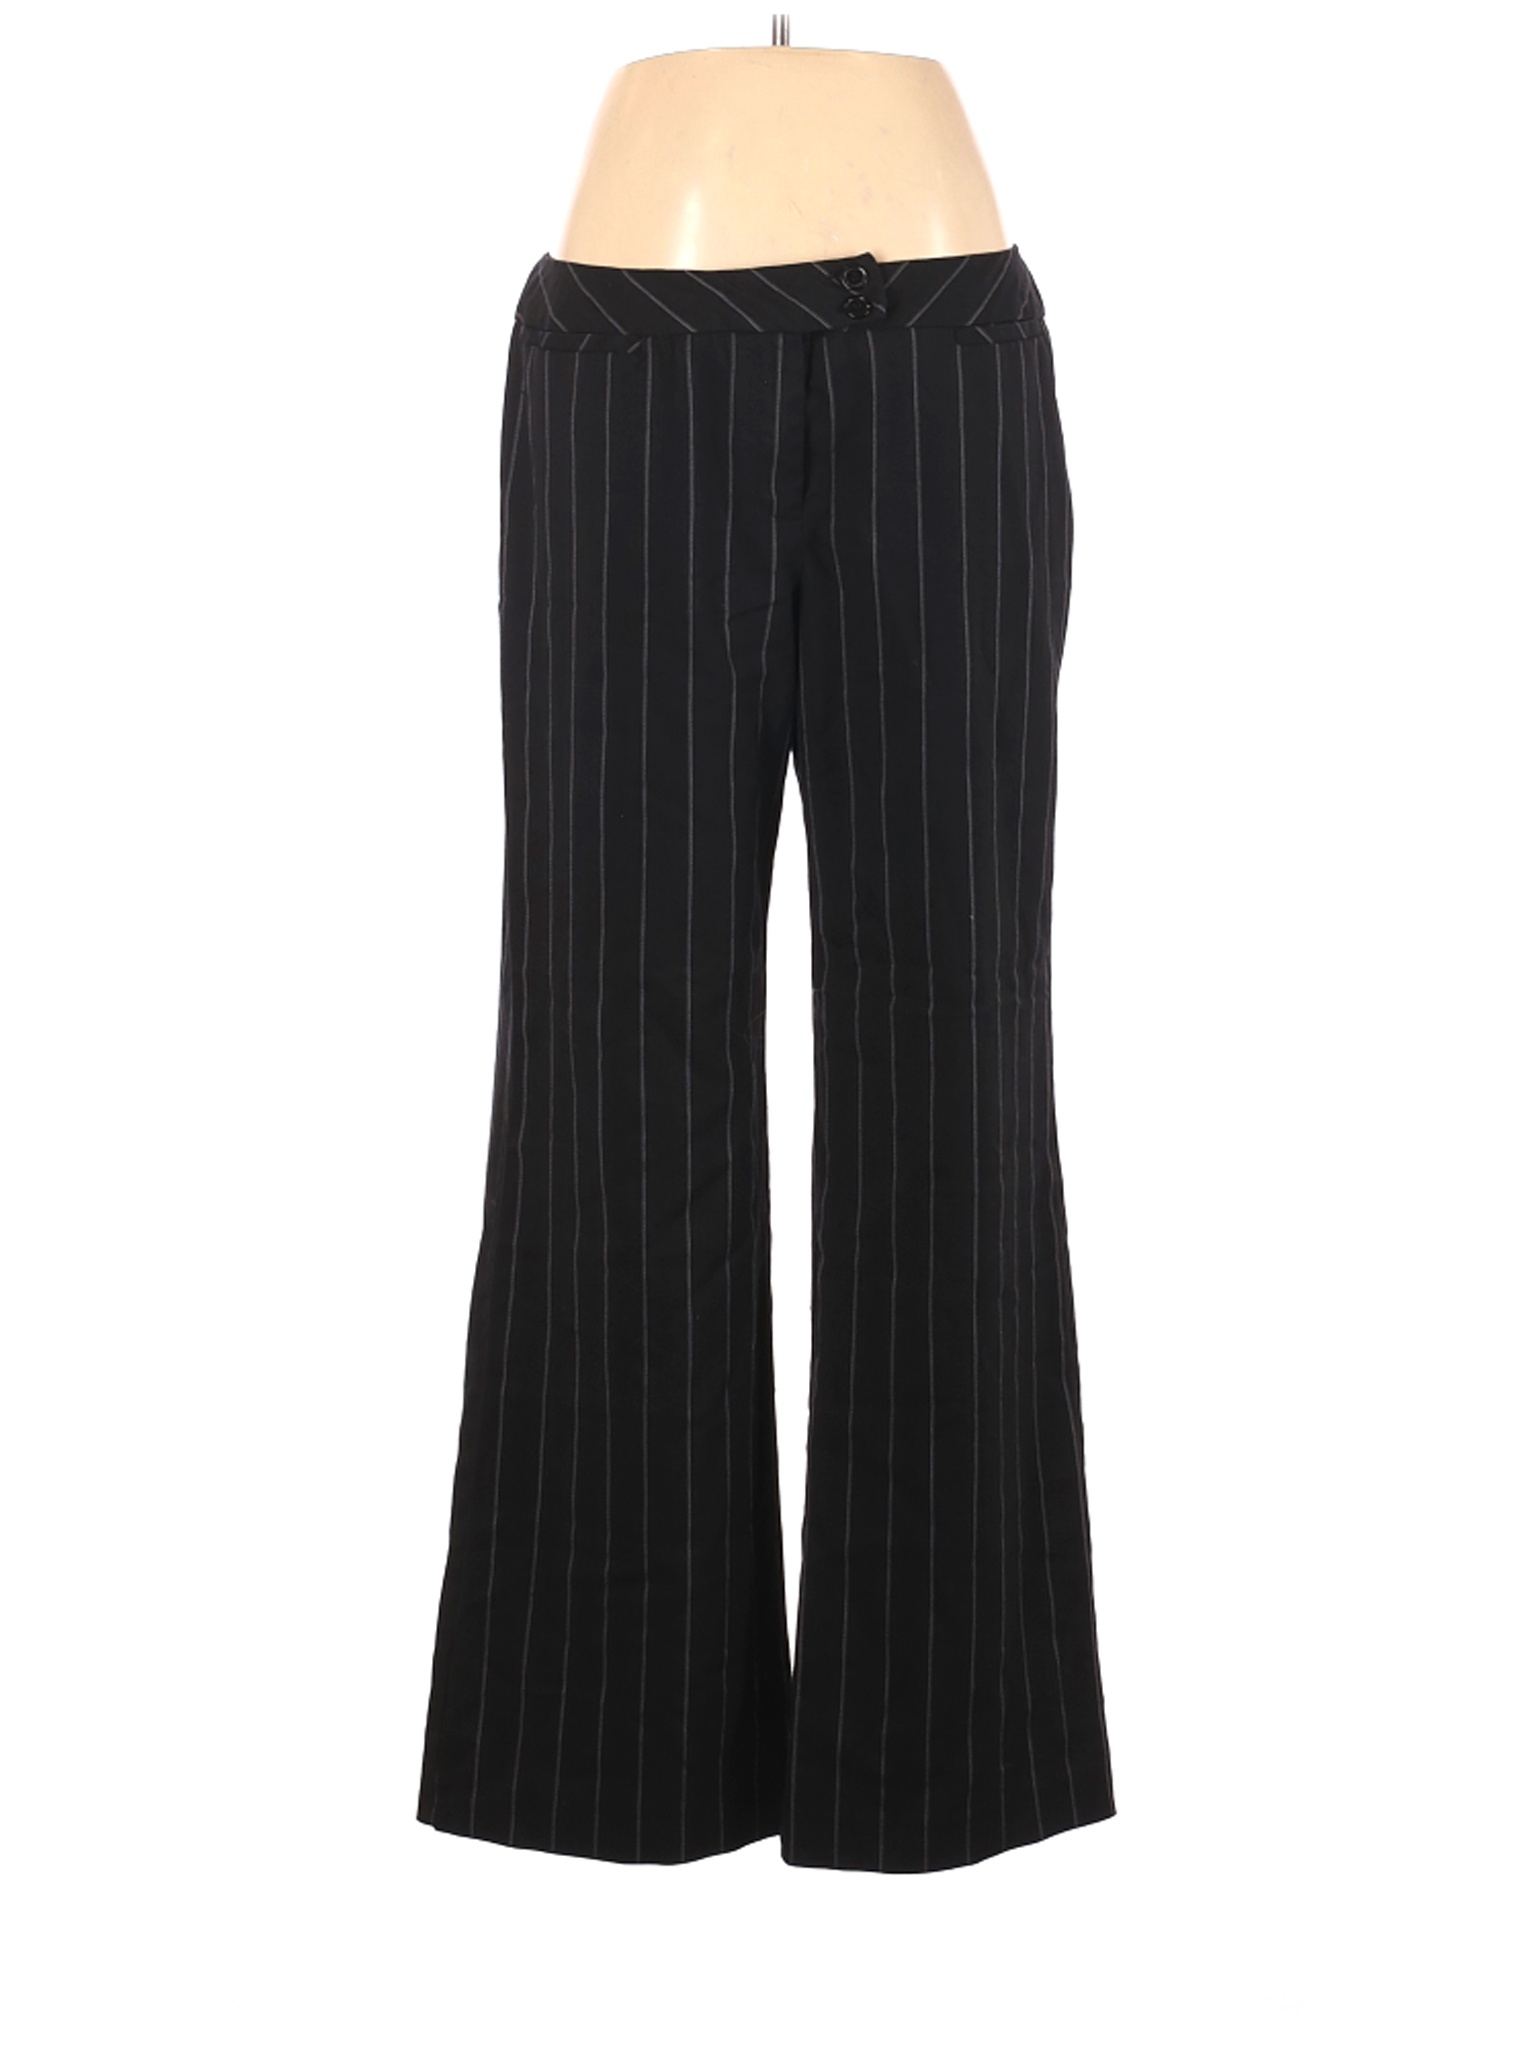 Nine & Co. by Nine West Women Black Dress Pants 16 | eBay